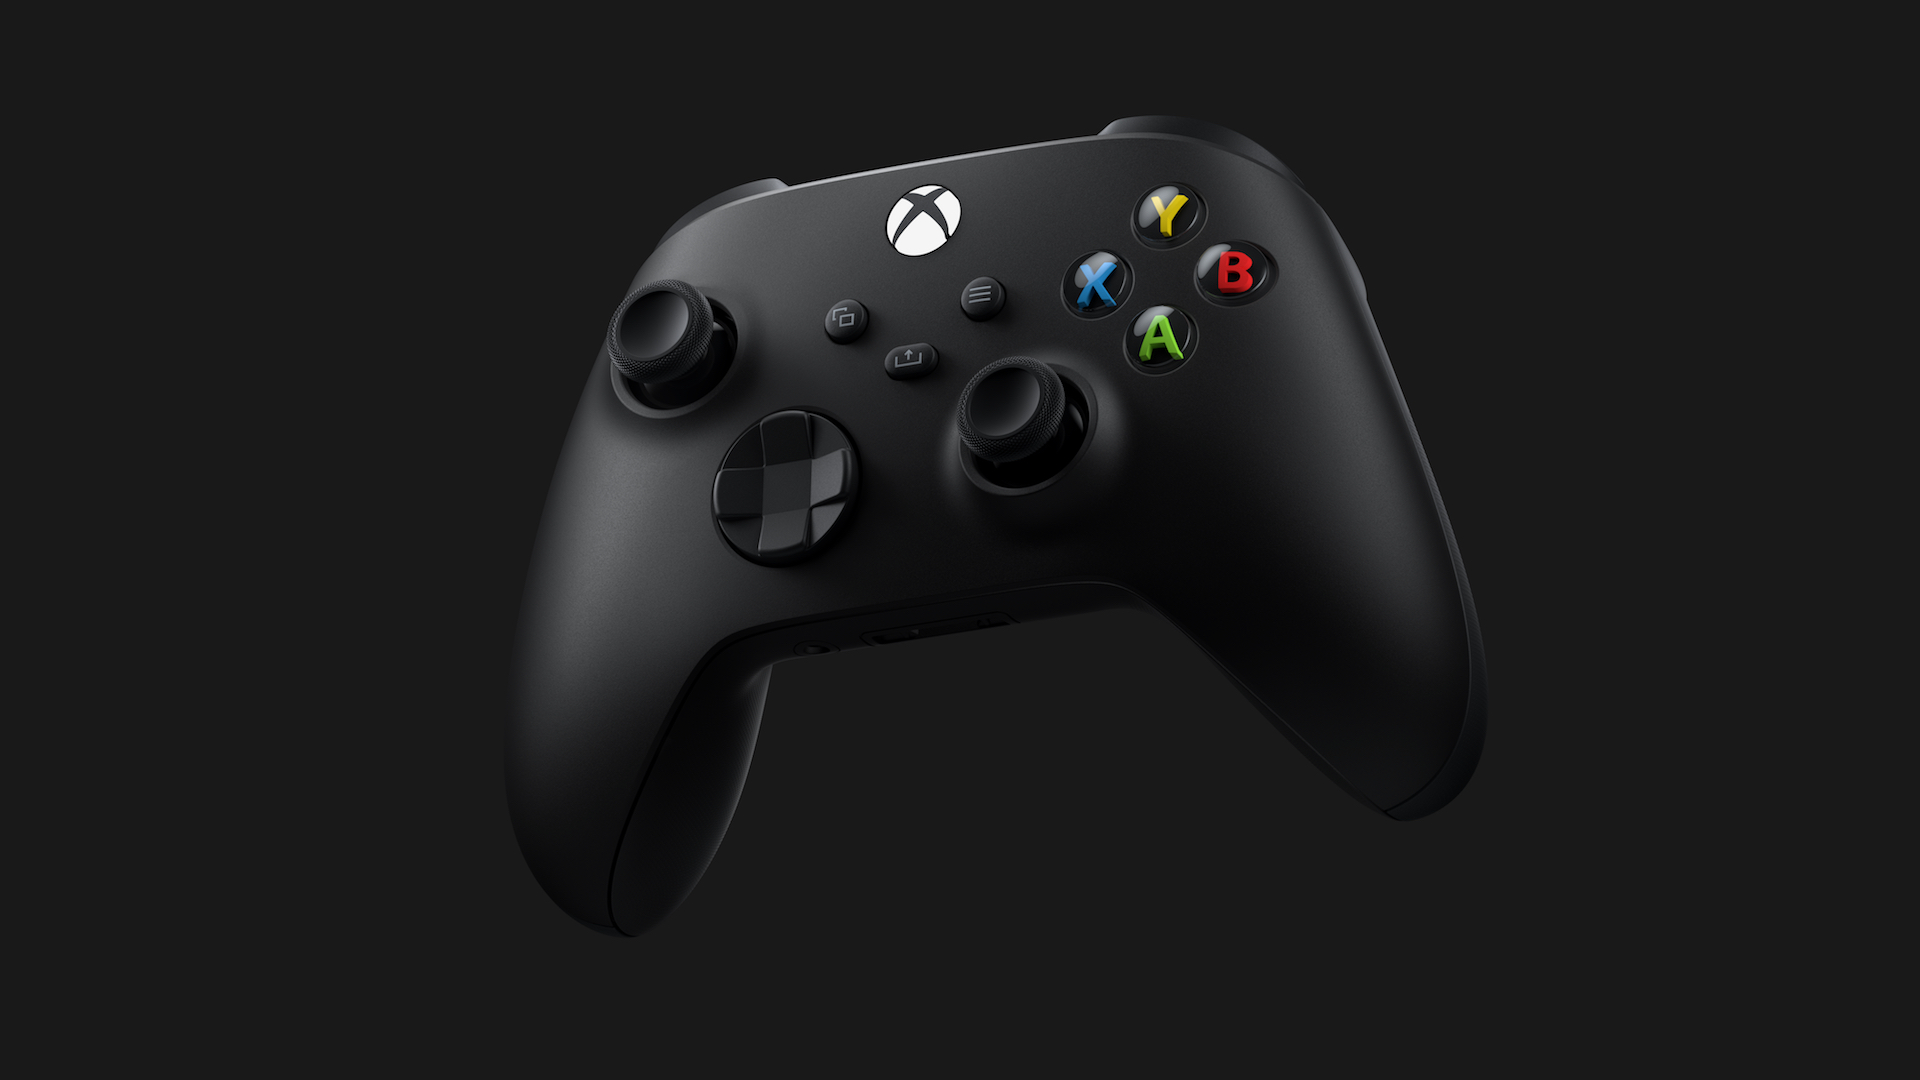 El precio de Xbox Series X se revelará "cuando estemos listos", dice un ejecutivo de Microsoft